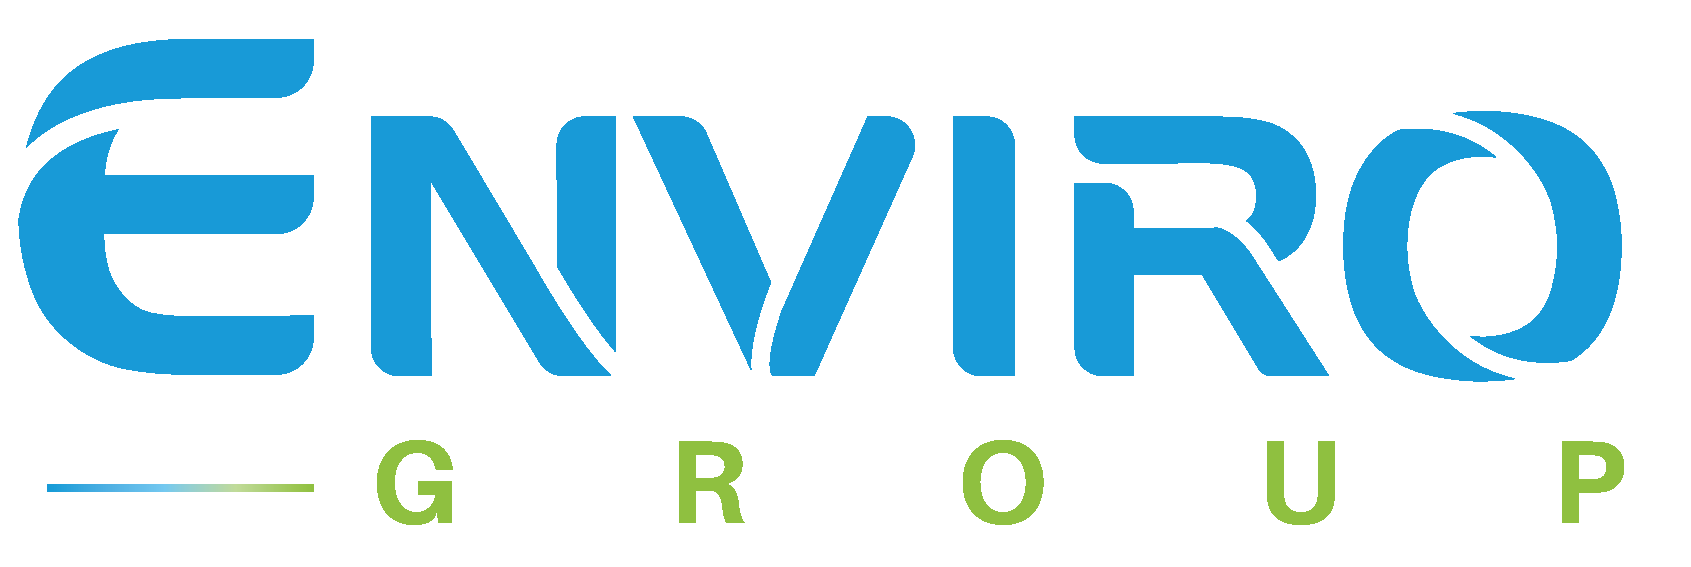 ENVIRO Group​